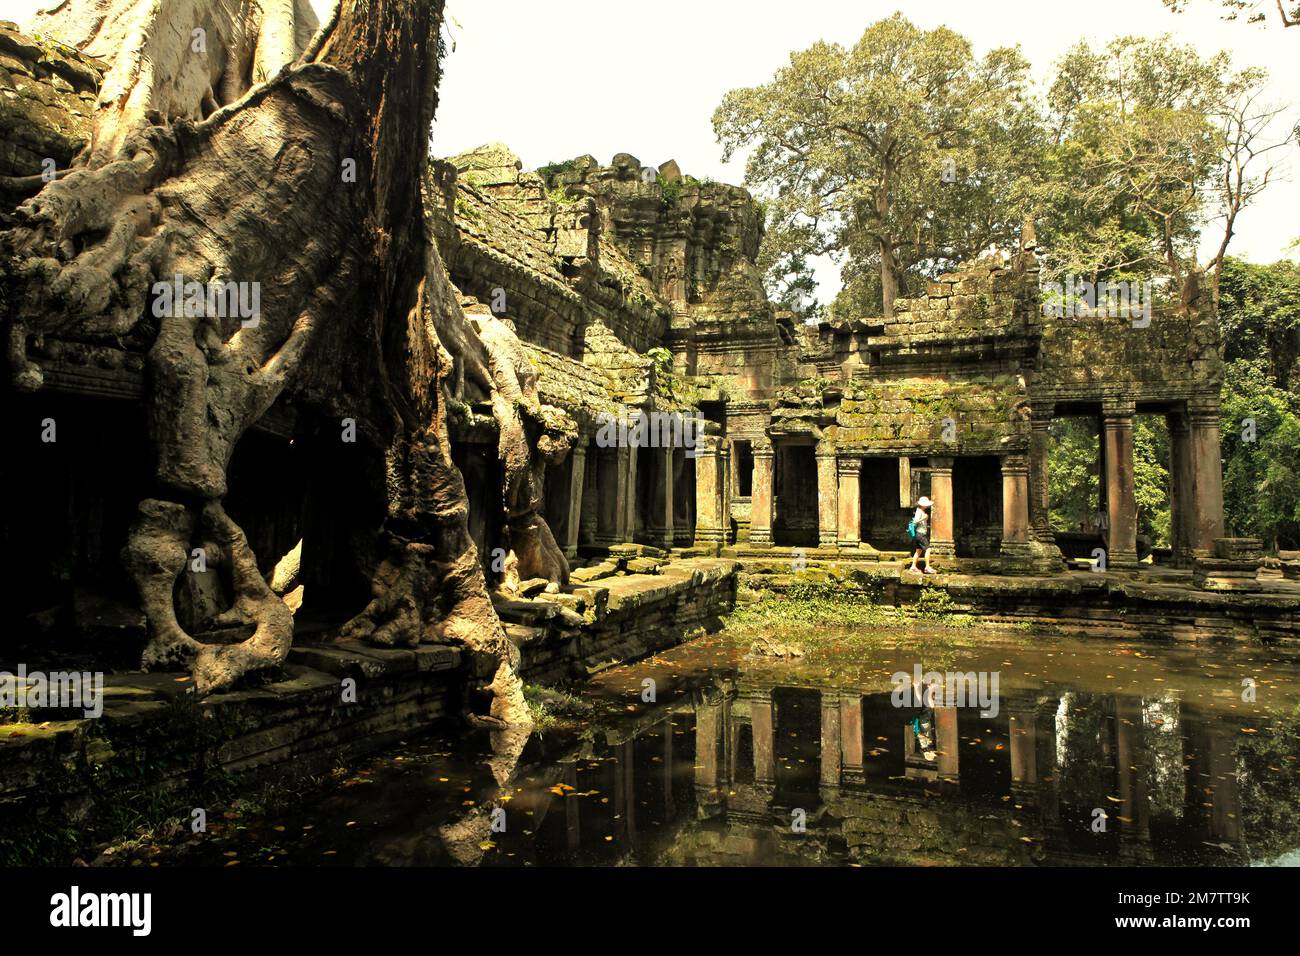 Eine Besucherin auf einem Fußweg zwischen einem alten künstlichen Teich und den Ruinen des Preah Khan Tempels in Siem Reap, Kambodscha. Teiche, Kanäle und Stauseen im Archäologischen Park von Angkor wurden gebaut, um eine alte Zivilisation des Khmer-Reiches zu unterstützen. Die größte und bevölkerungsreichste Stadt der Welt, in der bis zu 900.000 Menschen lebten, bis Kriege und Klimakatastrophen im 14. Und 15. Jahrhundert sie zur Aufgabe gezwungen hatten. Stockfoto